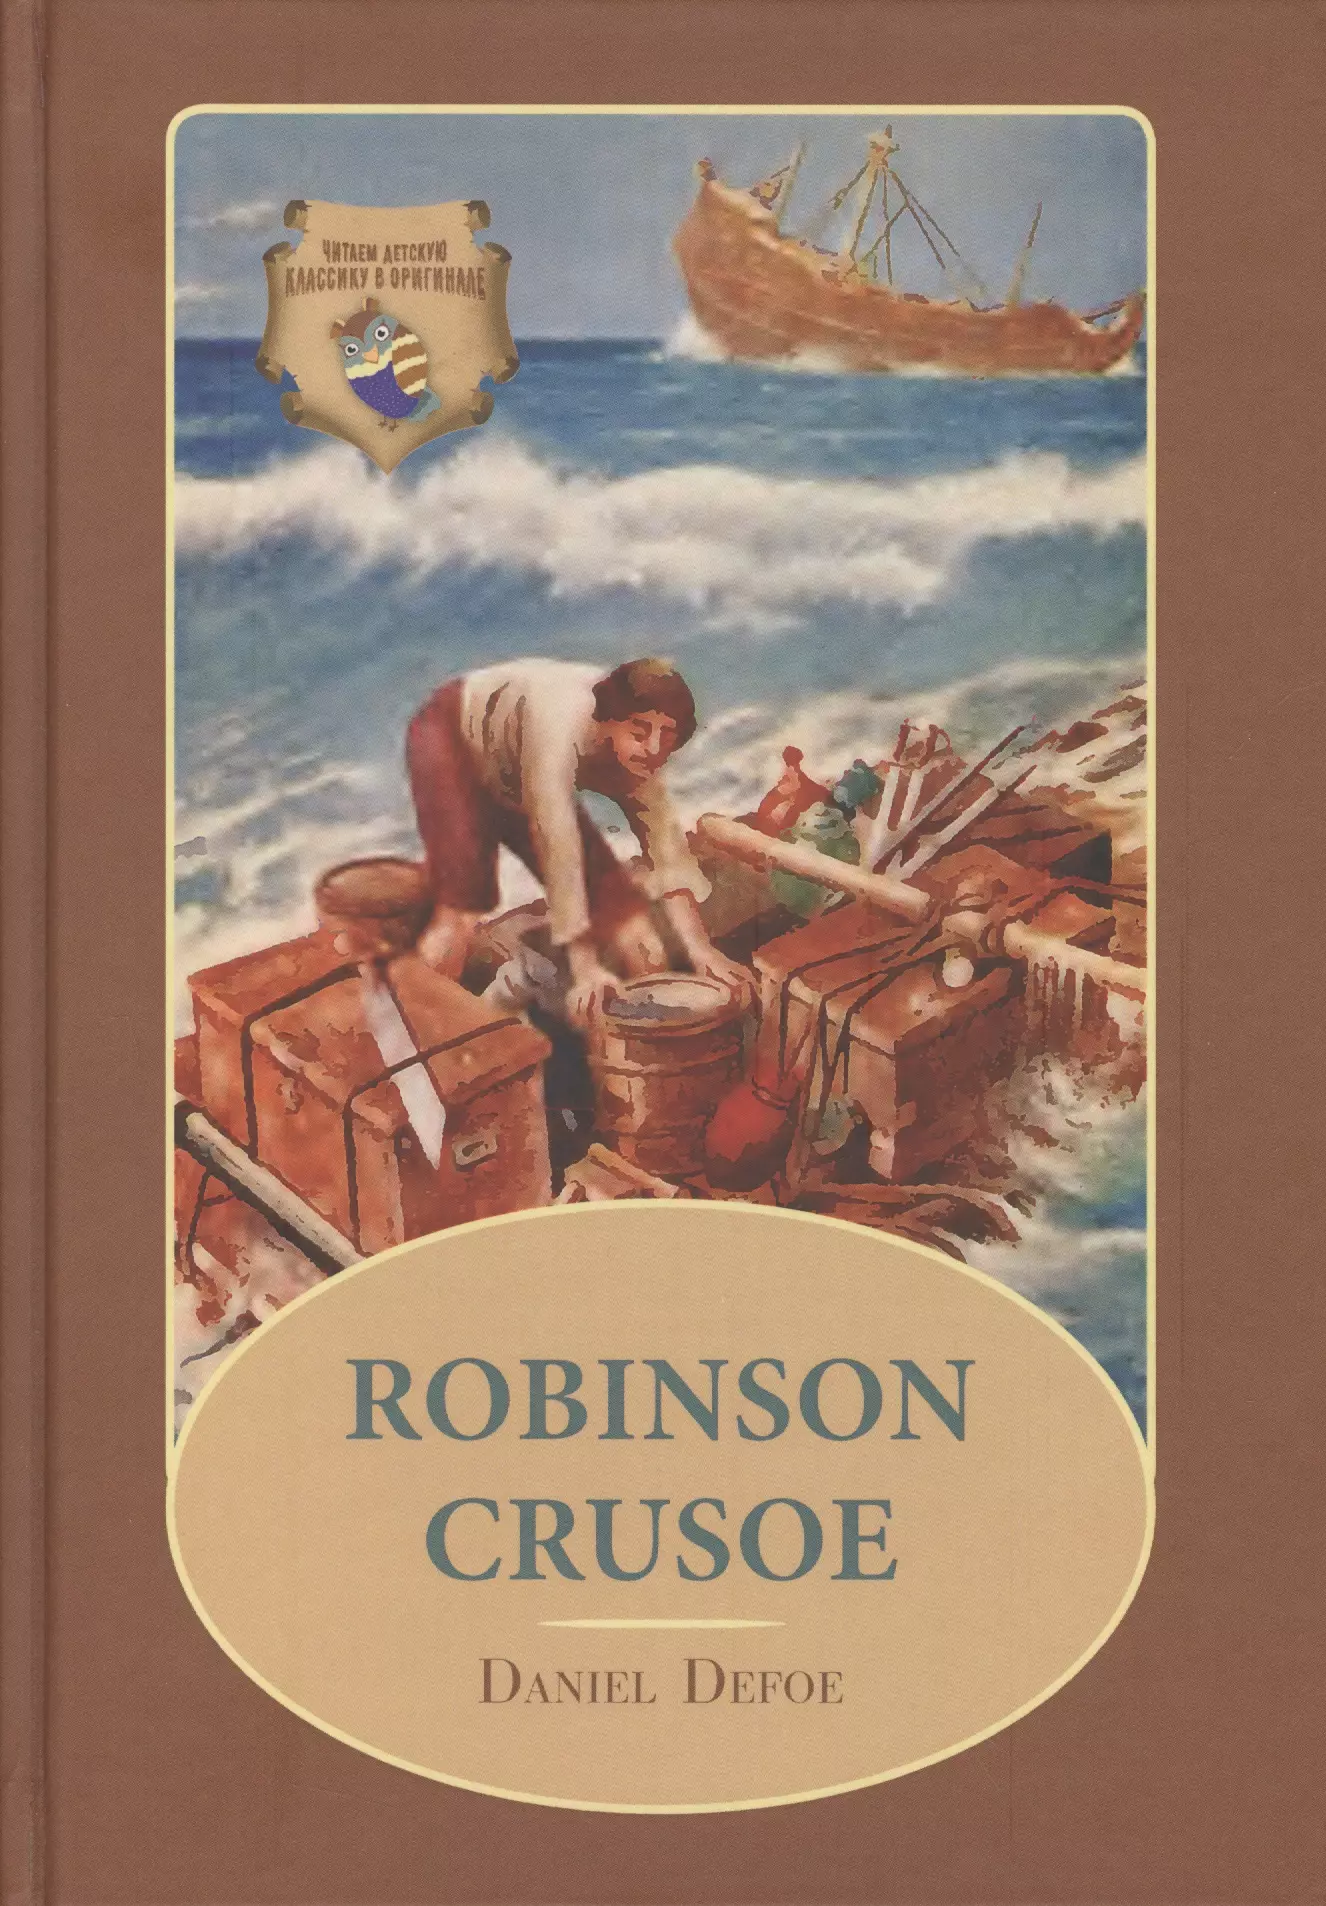 Язык робинзона крузо. Робинзон Крузо. Робинзон Крузо книга. Робинзон Крузо обложка книги на английском. Defoe "Robinson Crusoe".